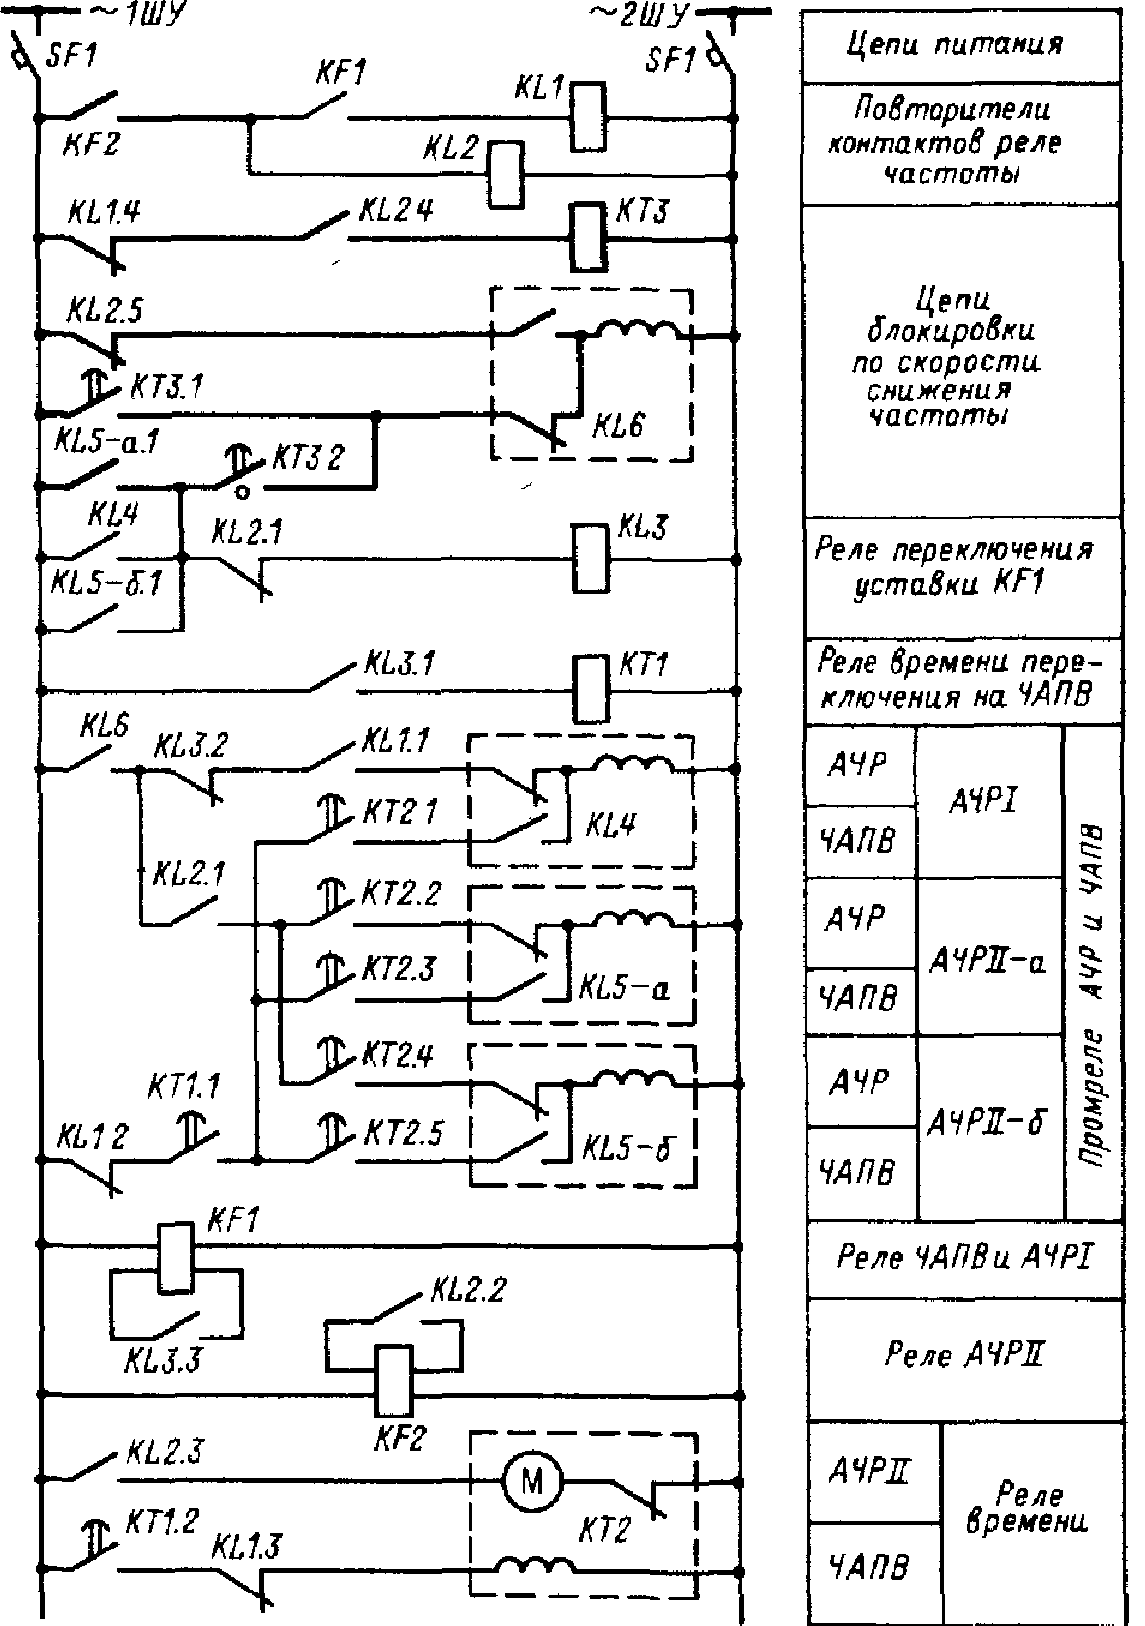 Схема АЧР с блокировкой по скорости снижения частоты